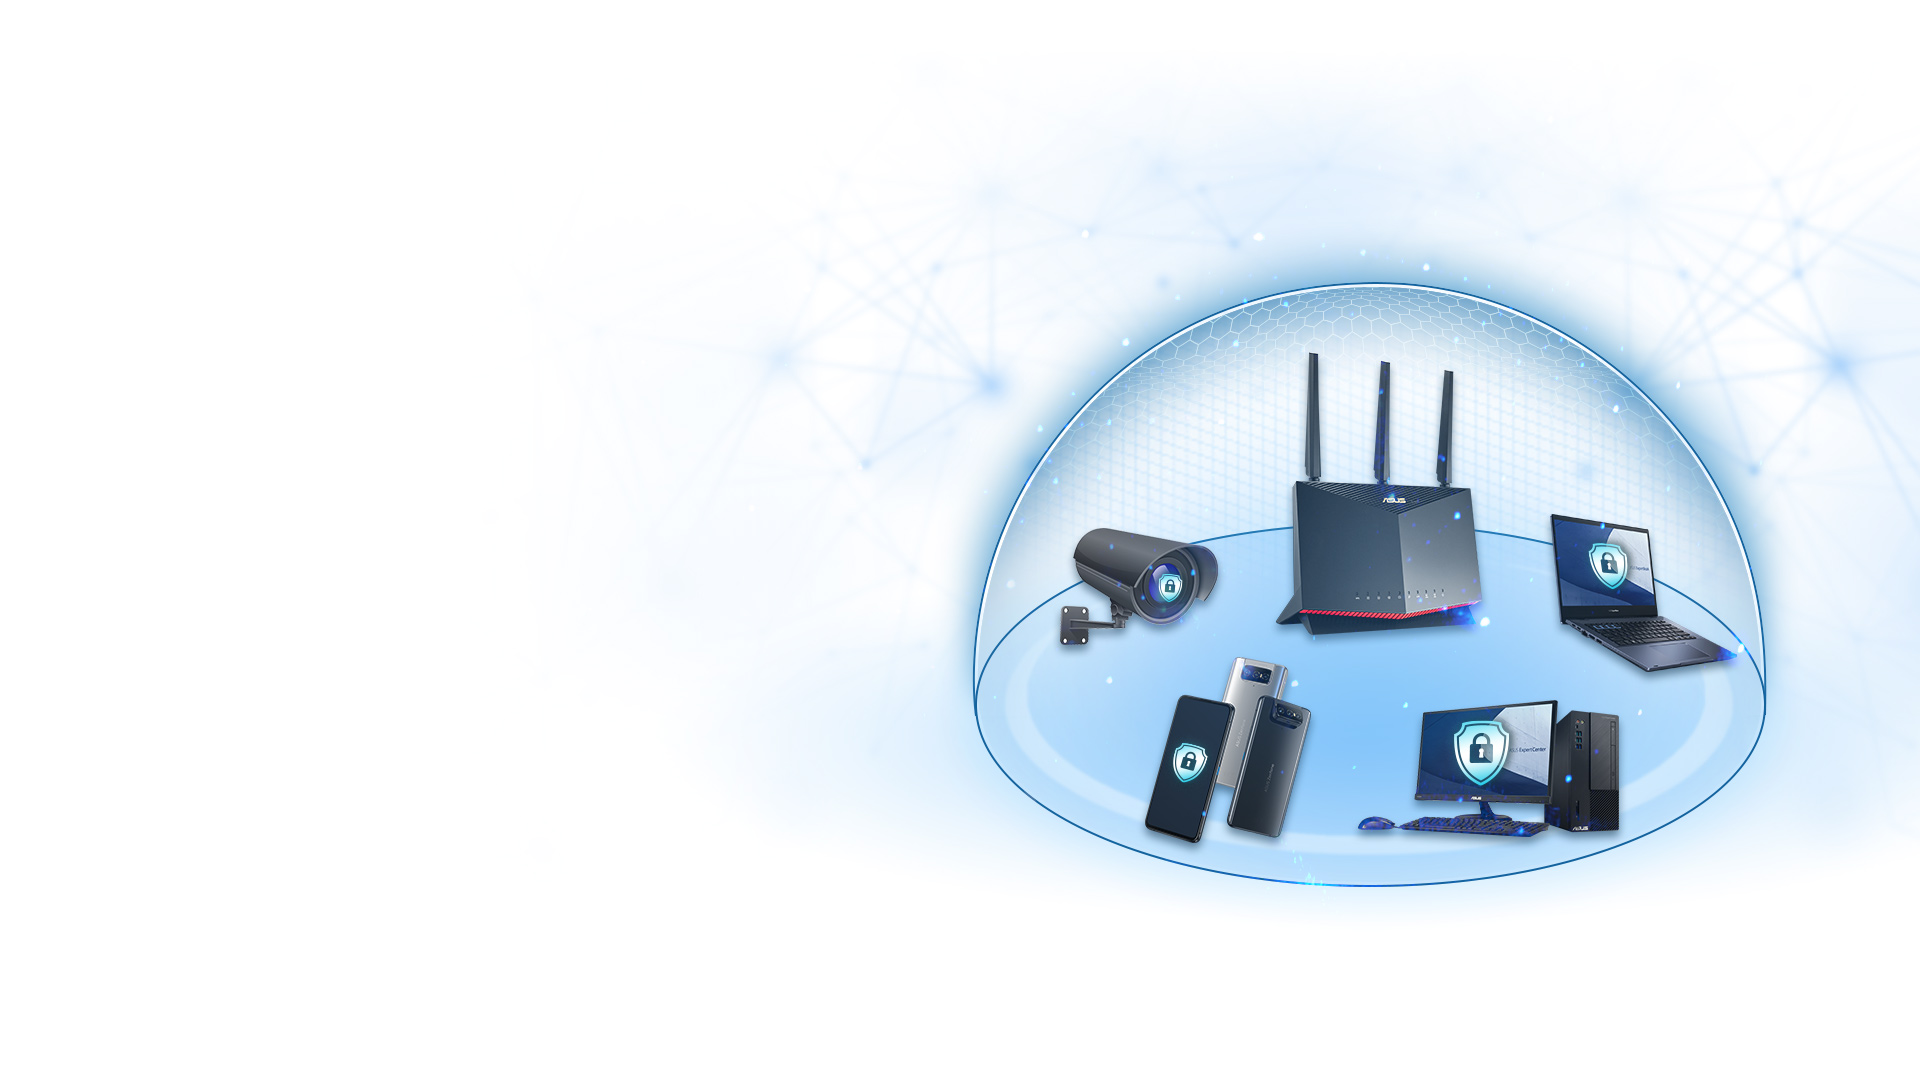 Hầu hết các router ASUS đều có công nghệ AiProtection được hợp tác với công ty Trend Micro™, đảm bảo rằng mọi thiết bị trong mạng doanh nghiệp của bạn đều được bảo vệ